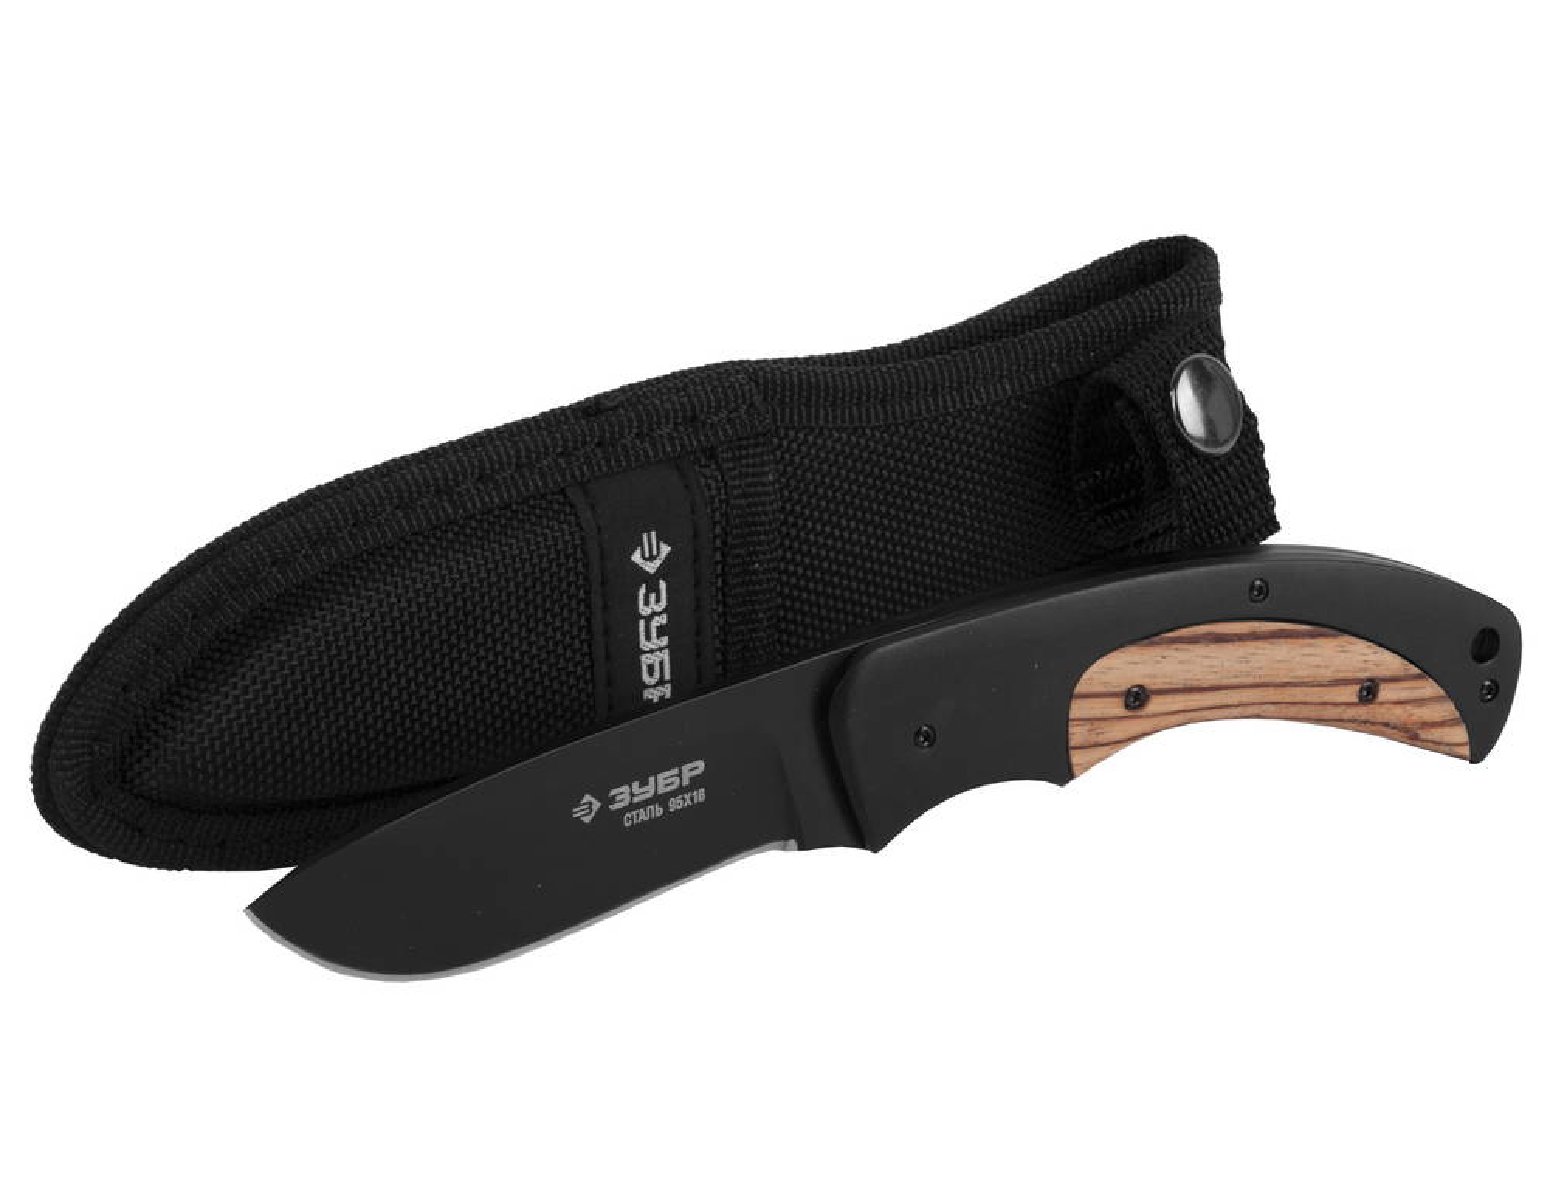 Нож ЗУБР Хантер 215 мм с фиксированным лезвием 90 мм (47740)Купить